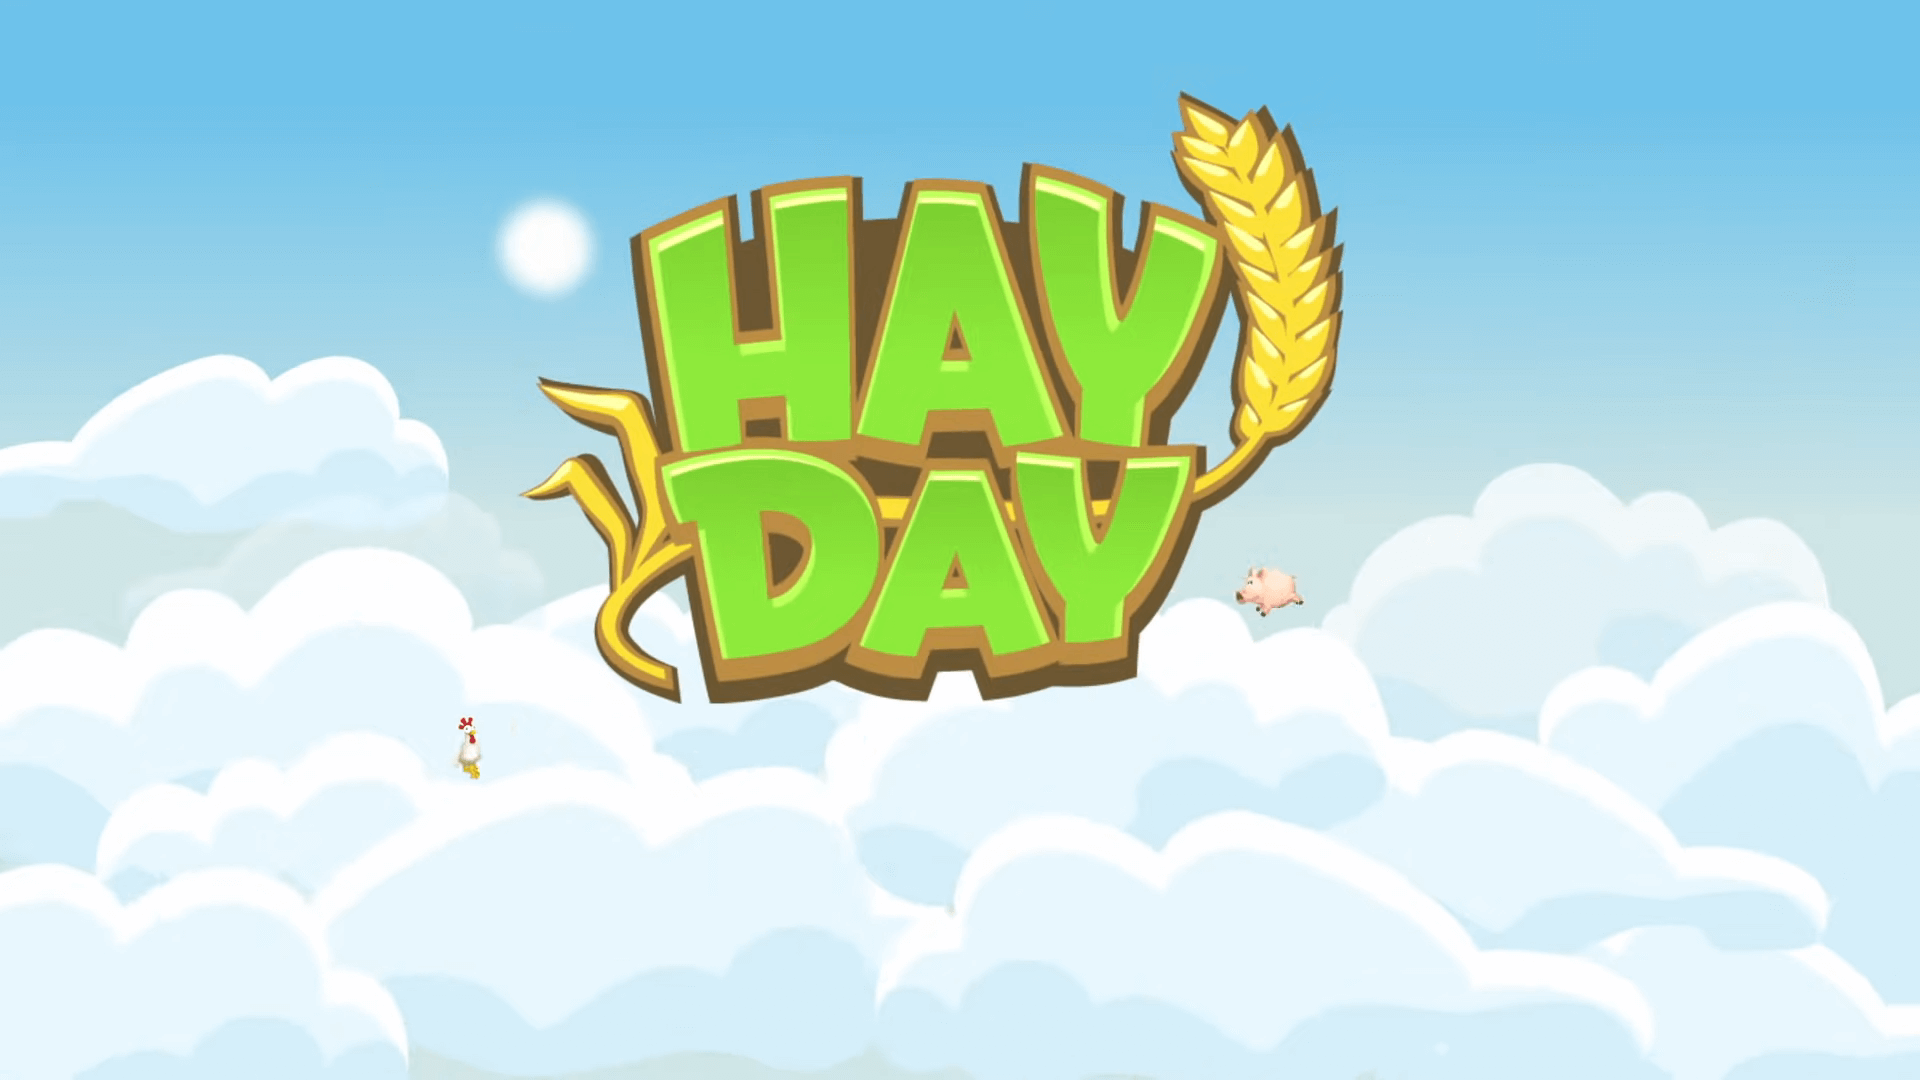 Störung in Hay Day sorgt für Unruhe auf dem Bauernhof Titelo